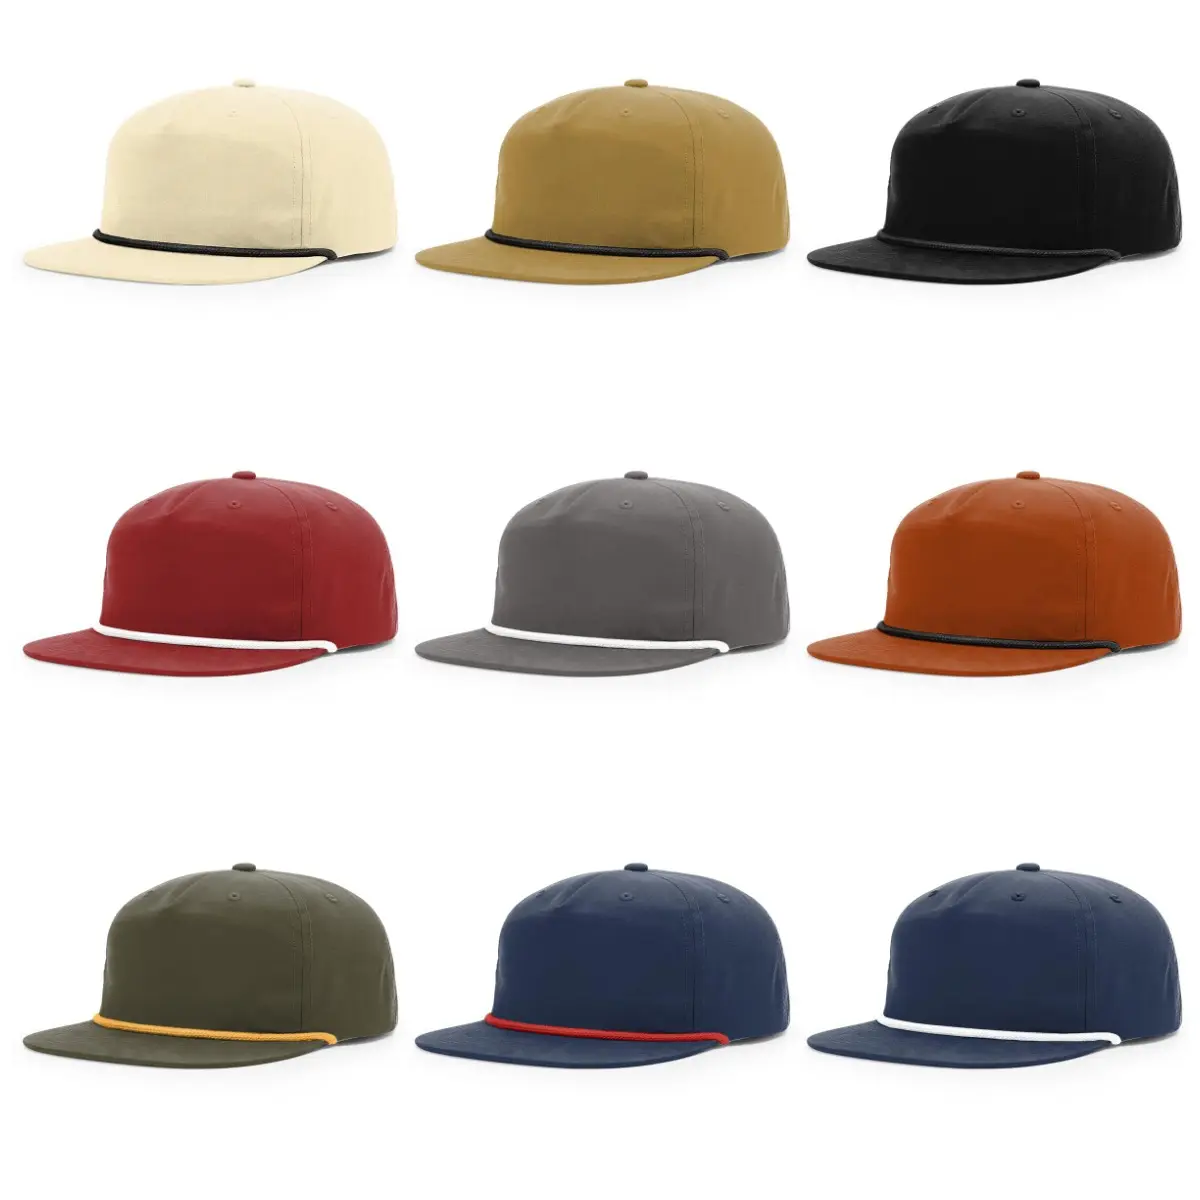 HS24 – chapeau noir uni à 5 panneaux, richarsson personnalisé, 256, vierge, Veracap, camionneur, yupoong, corde, SnapBack, casquette de créateur